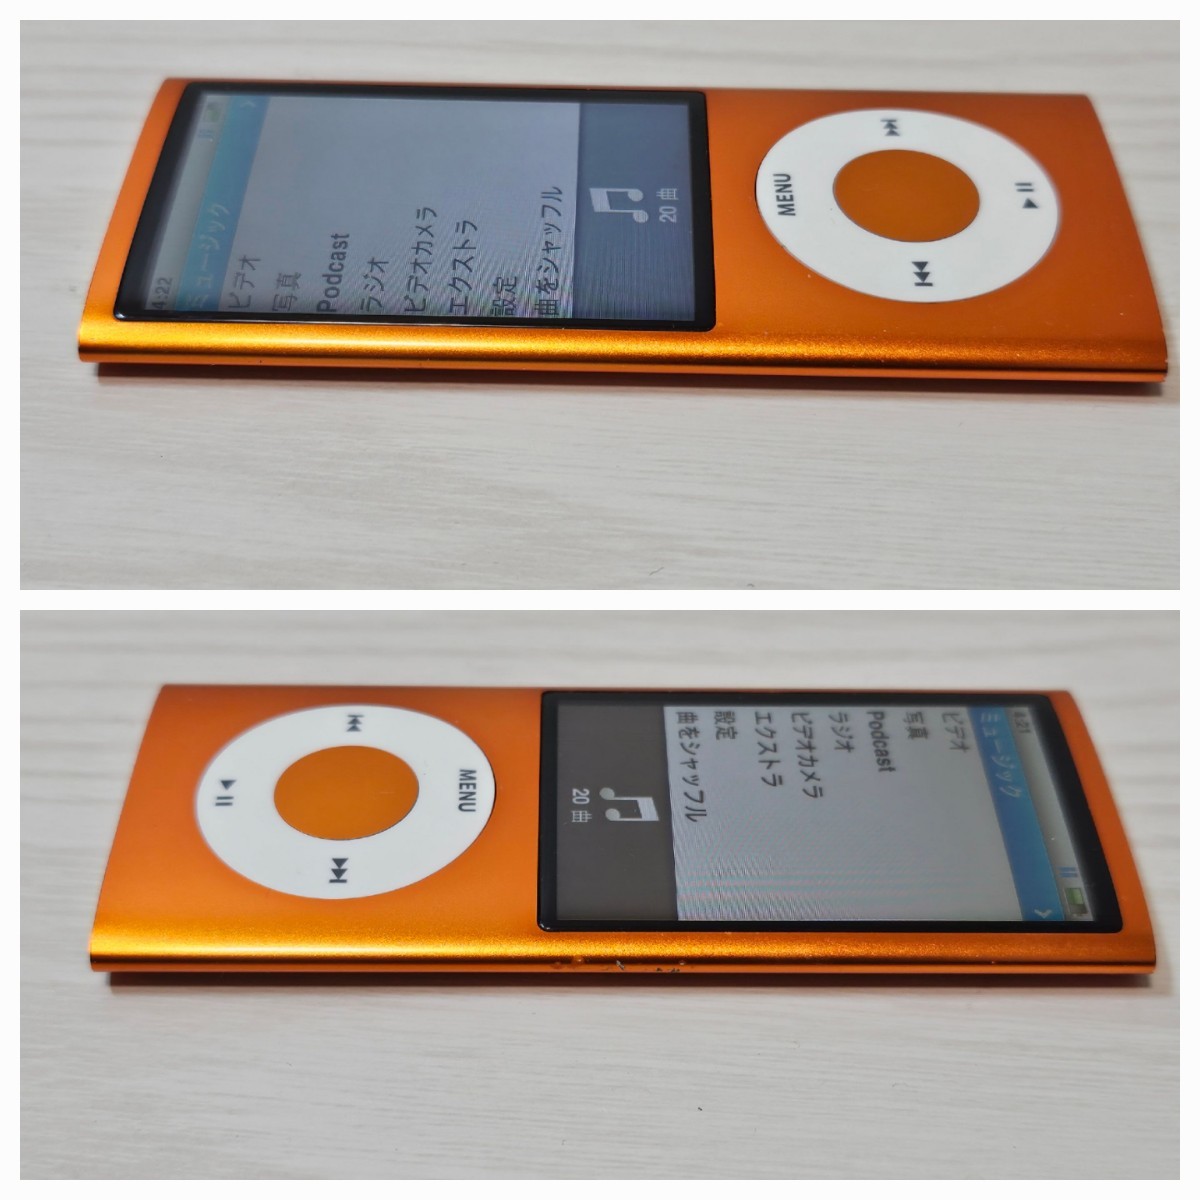 ☆動作確認済み☆iPod nano 第5世代 A1320 オレンジアップル Apple 16GB 本体のみ_画像10